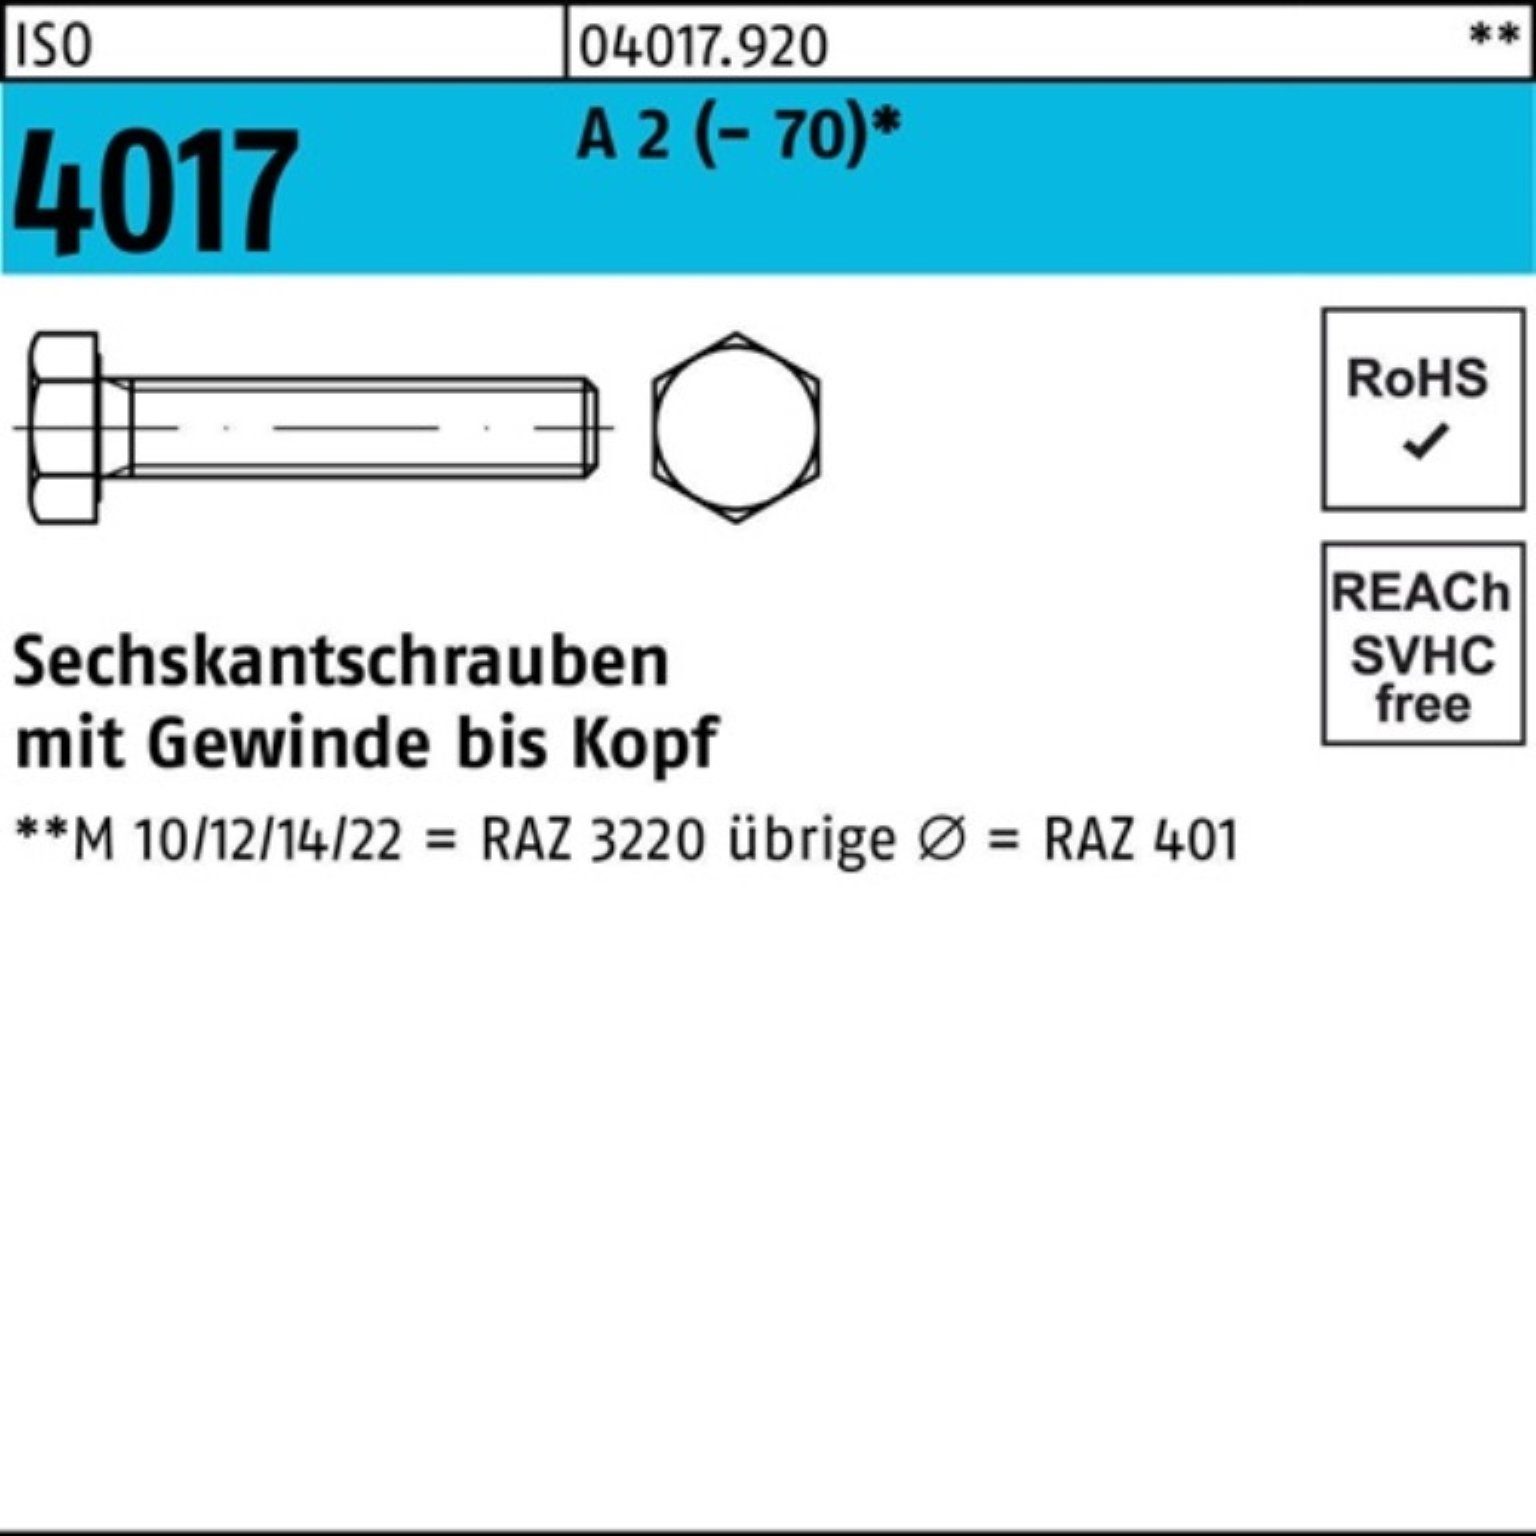 160 4017 (70) Bufab M24x ISO 2 100er 1 Stück A Sechskantschraube Pack Sechskantschraube VG